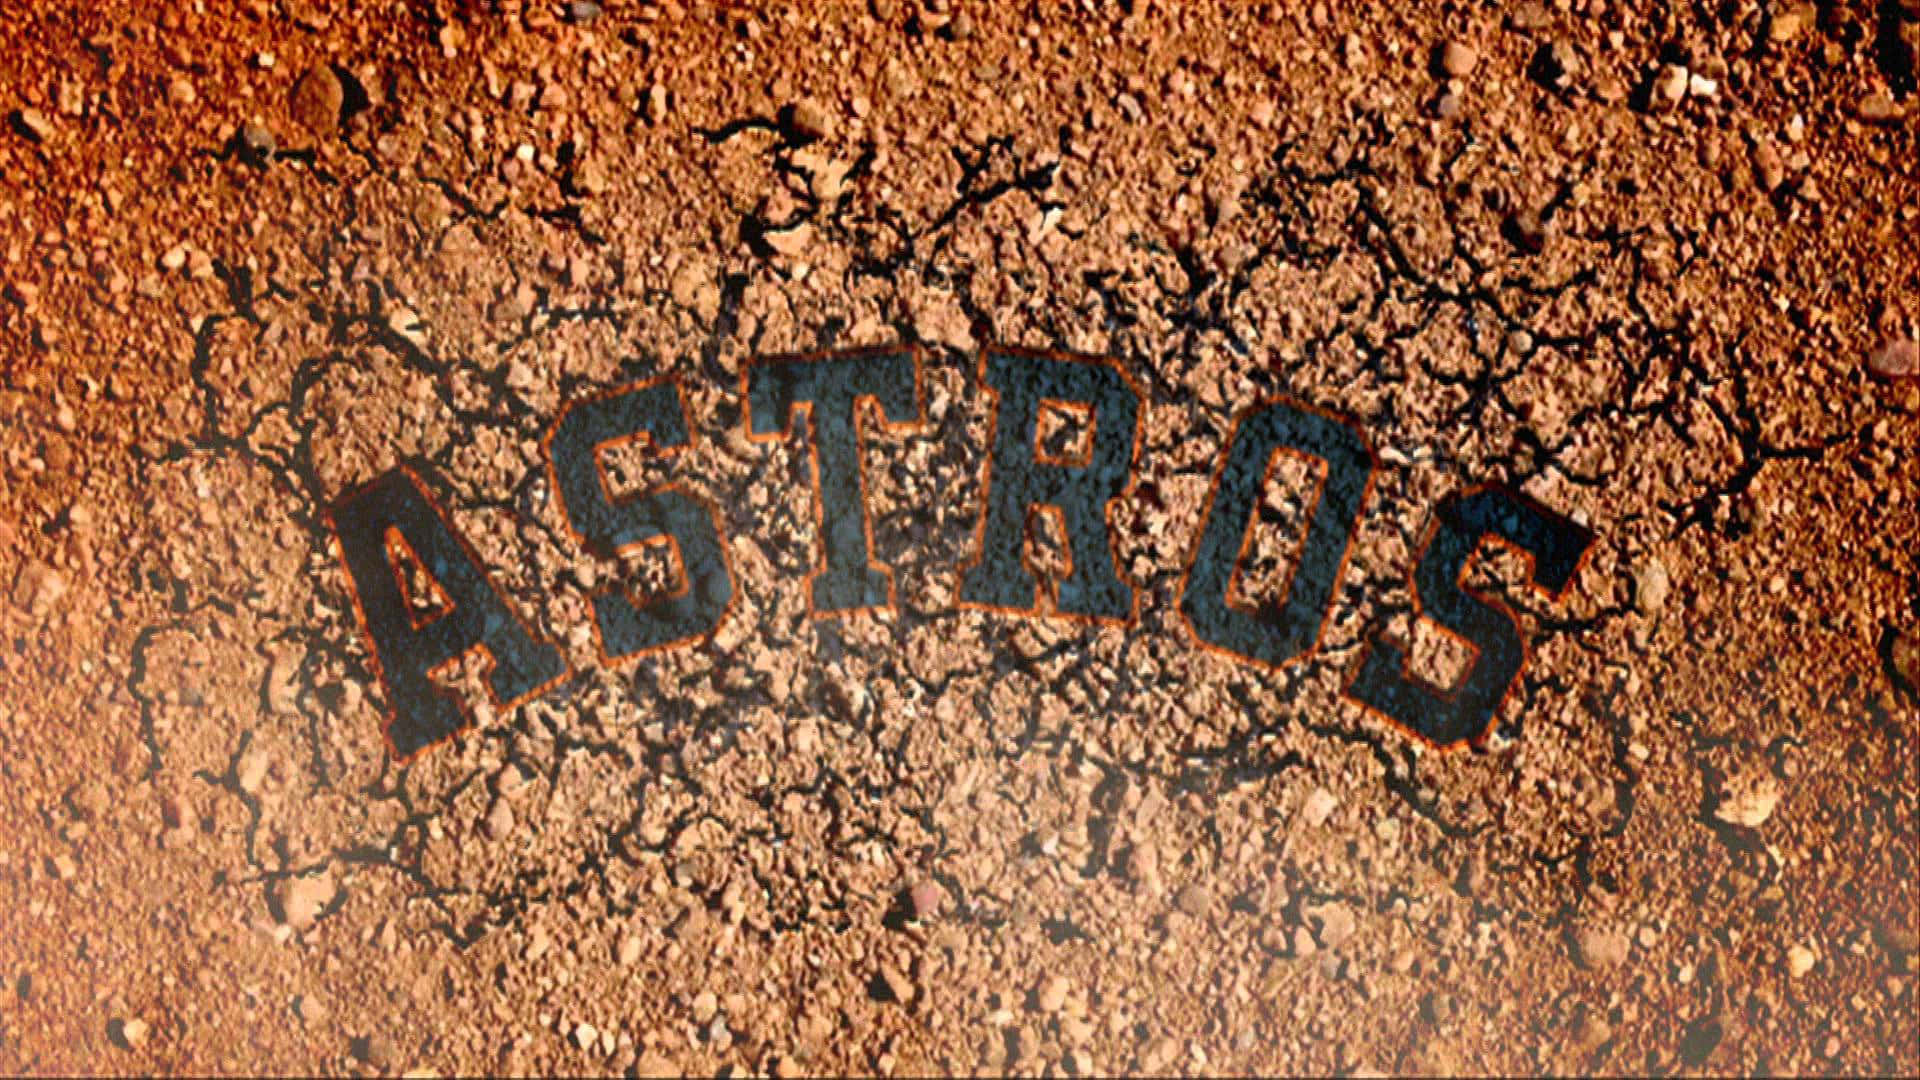 Loshouston Astros En Acción En El Minute Maid Park.